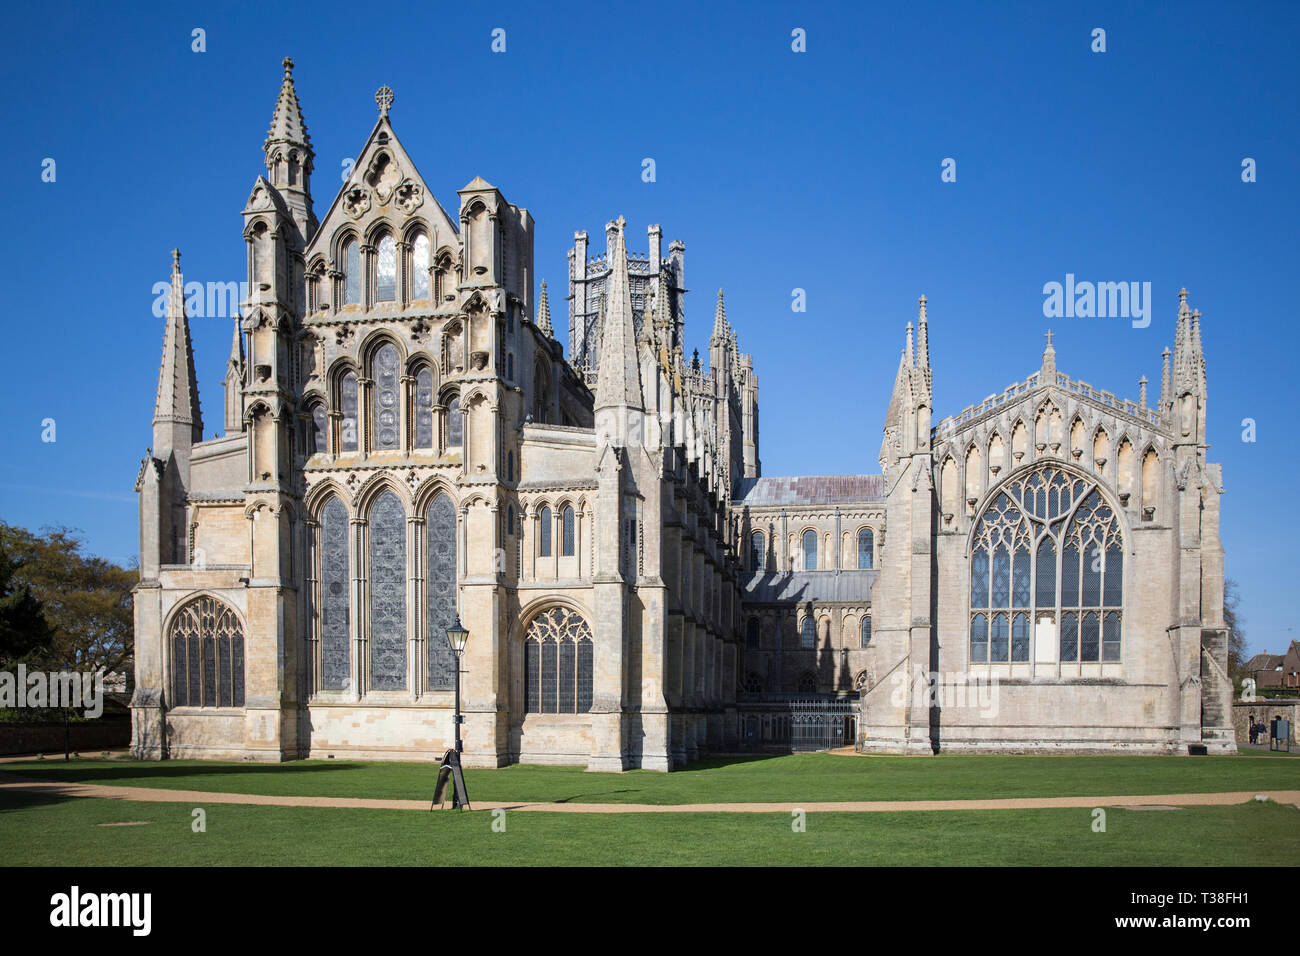 Vue de l'extrémité et Lady Chapelle de cathédrale d'Ely, Ely, Cambridgeshire, Angleterre Banque D'Images